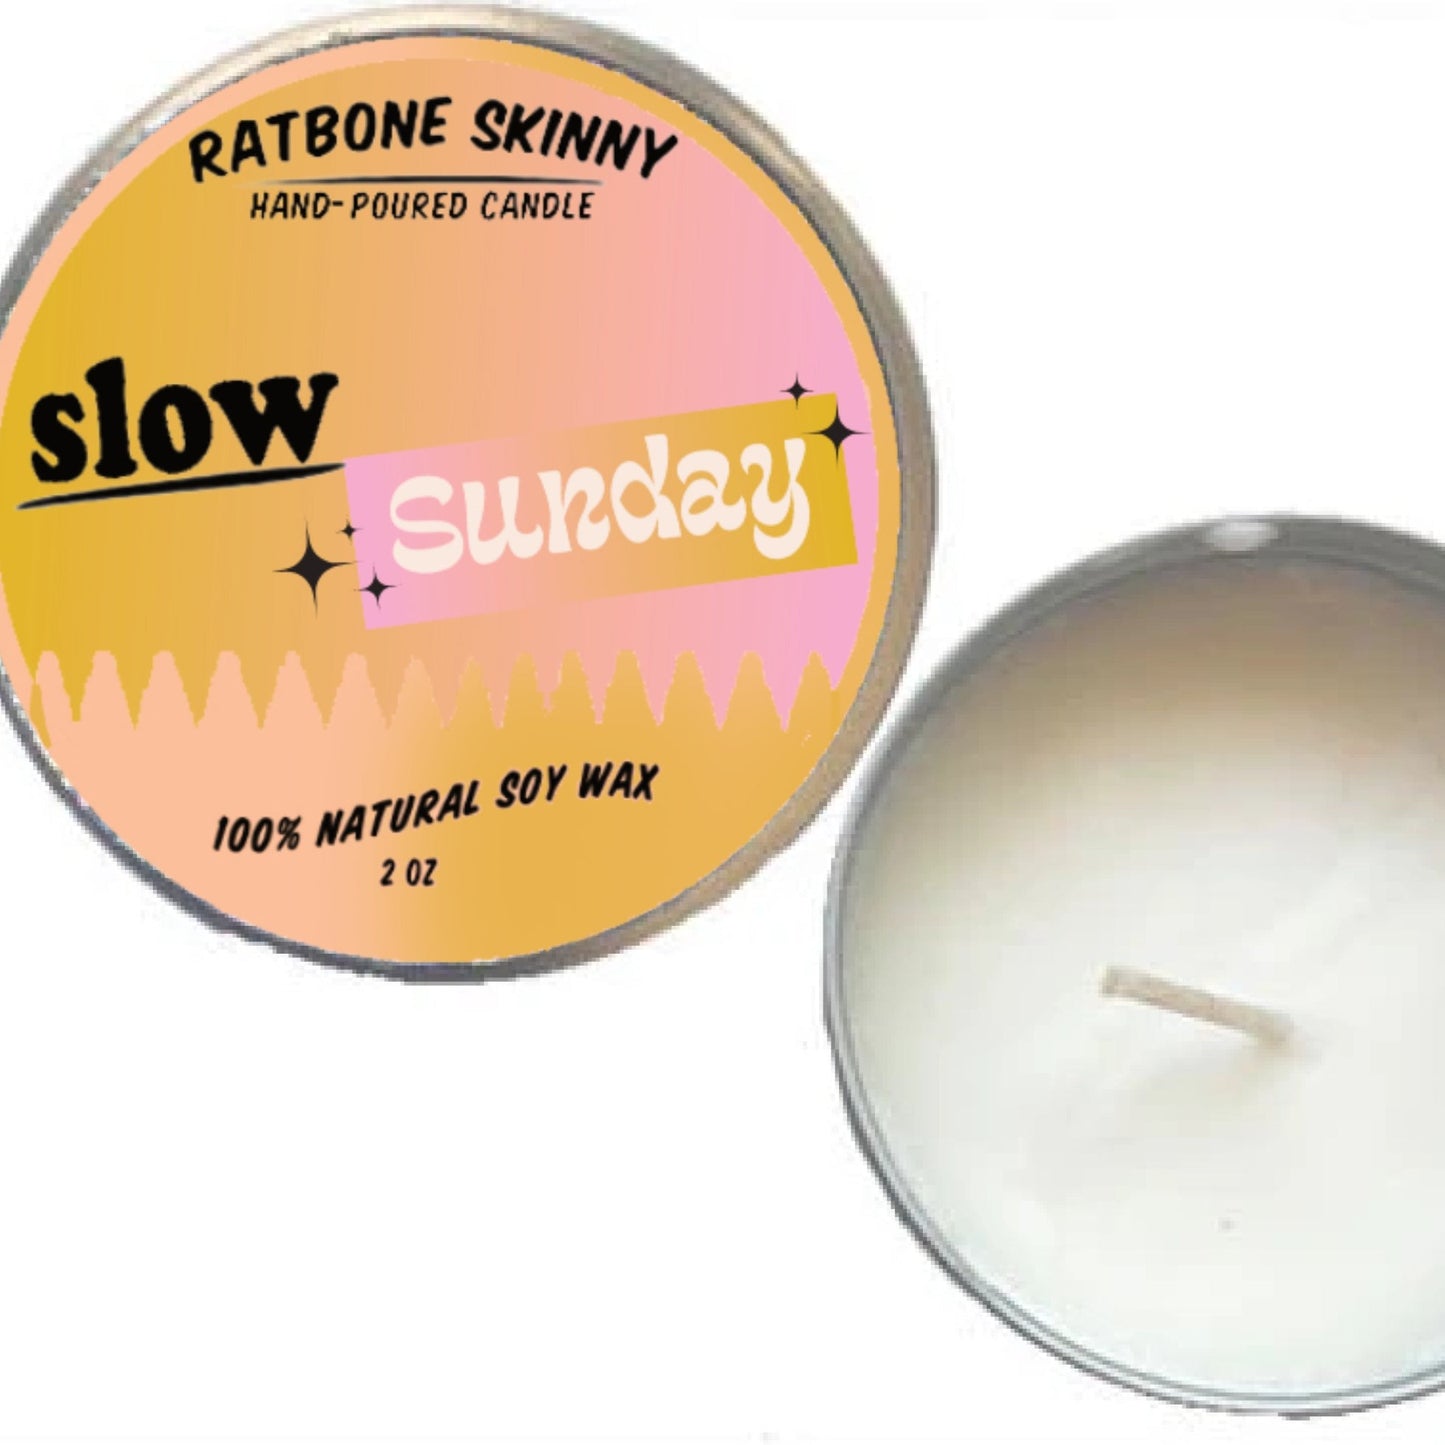 Slow Sunday Candle